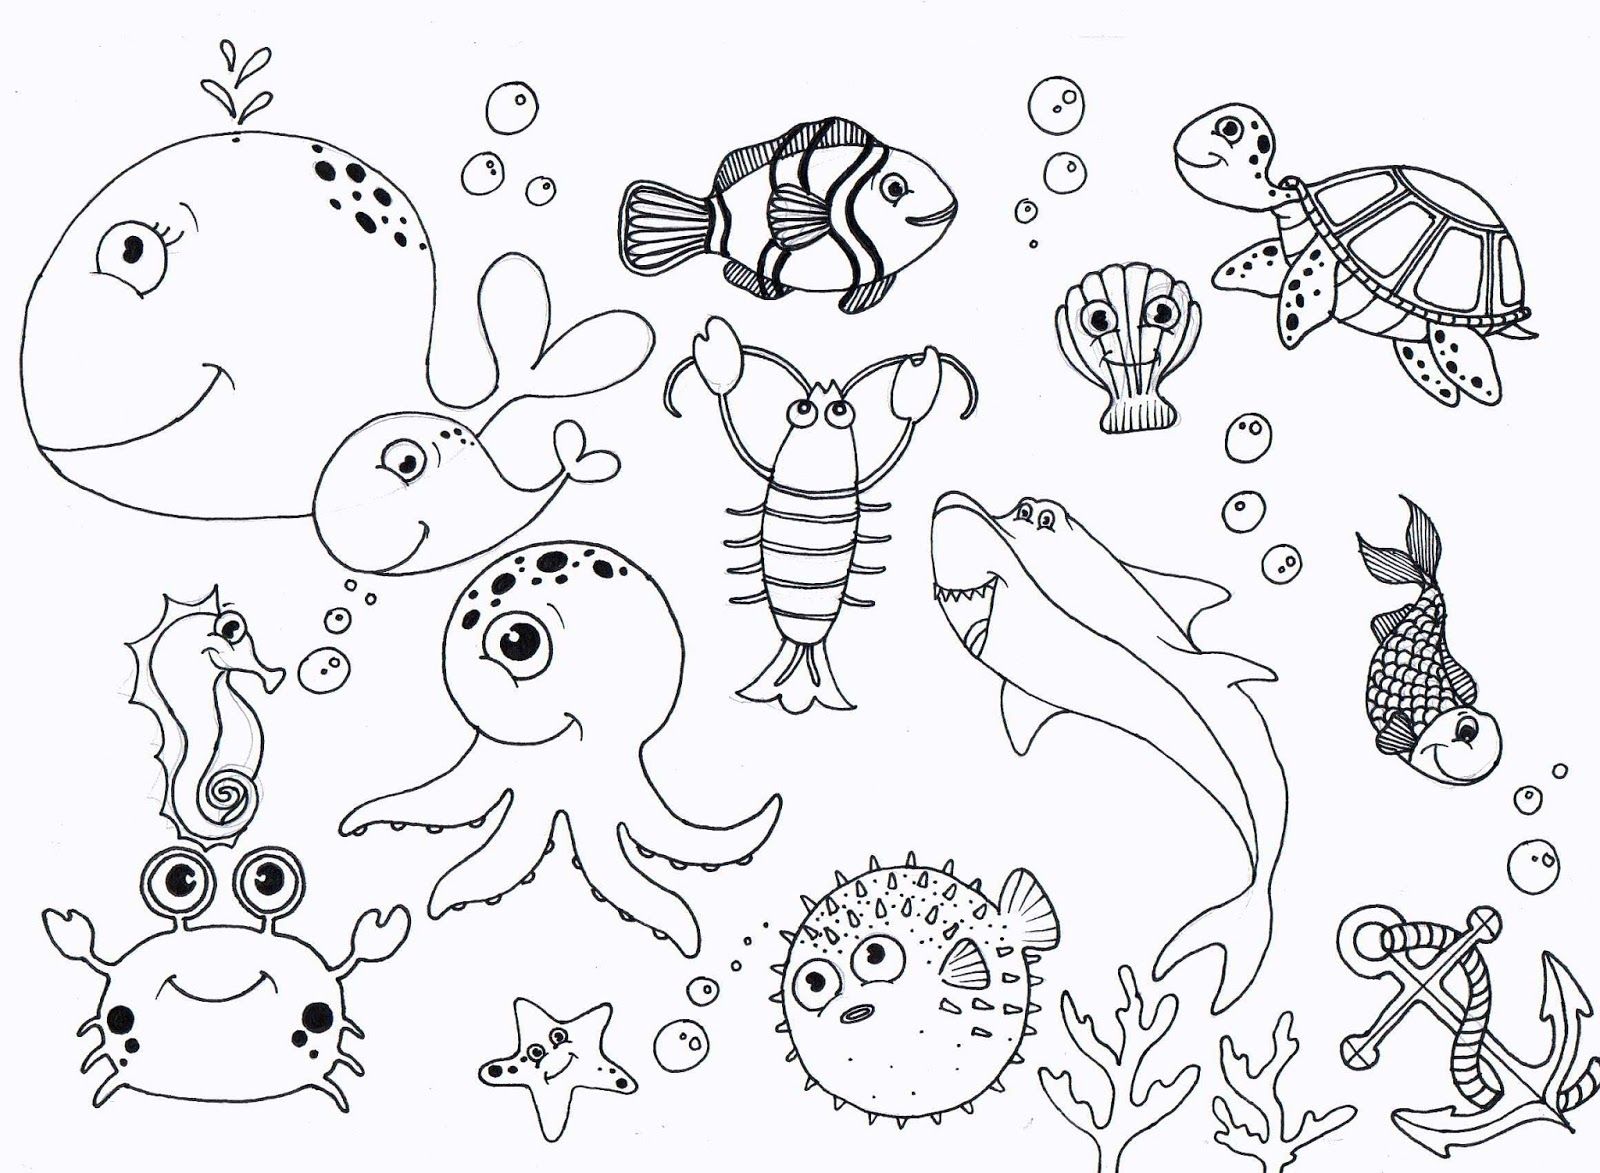 الحيوانات تسبح تحت الماء من البحار والمحيطات